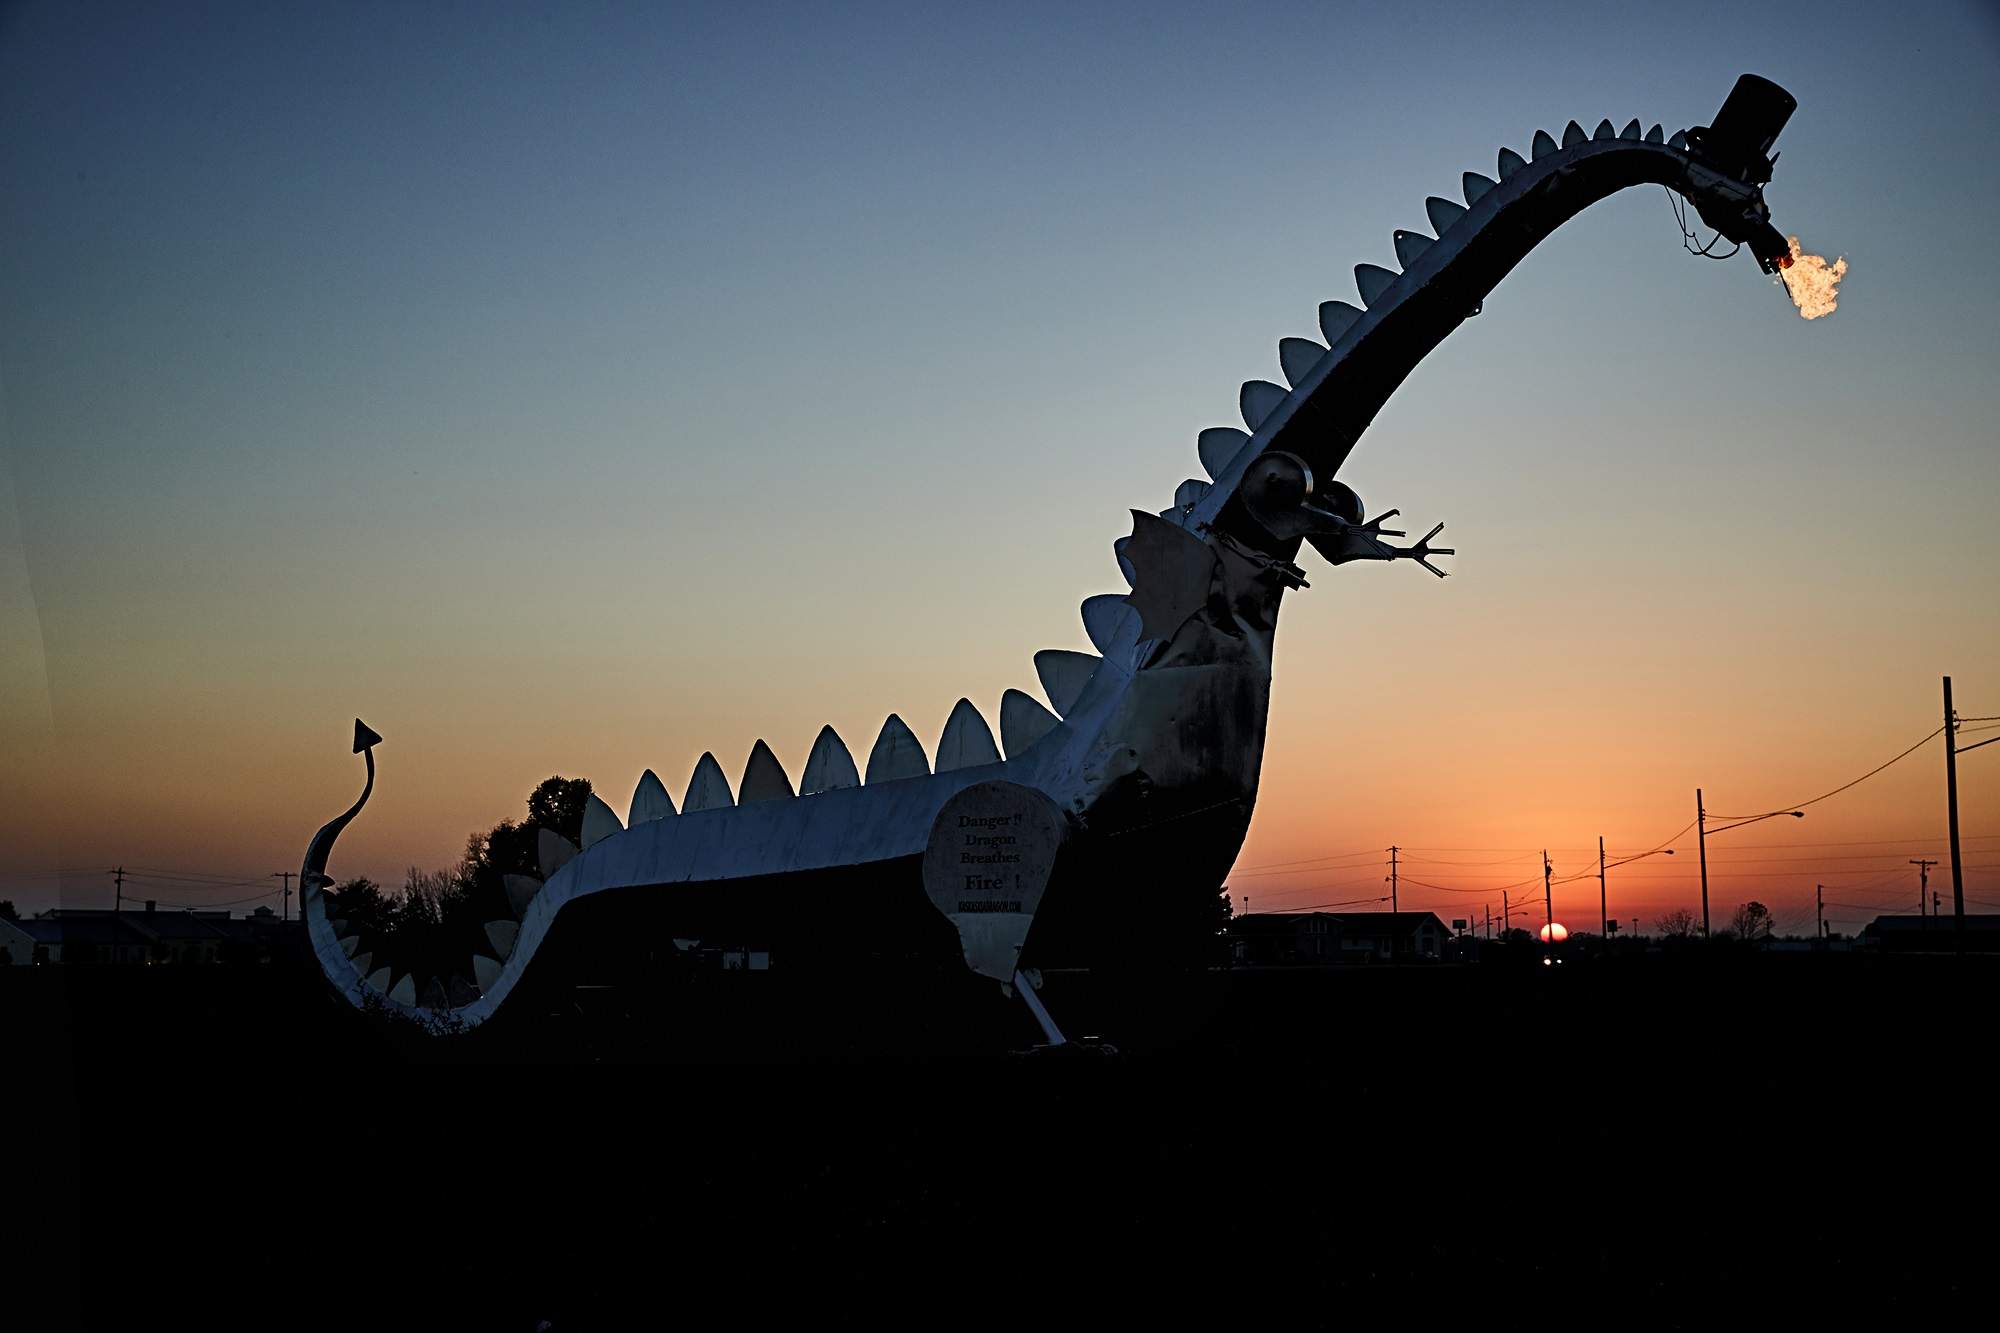 El Dragón de Kaskaskia, una gran escultura de dragón que respira fuego.